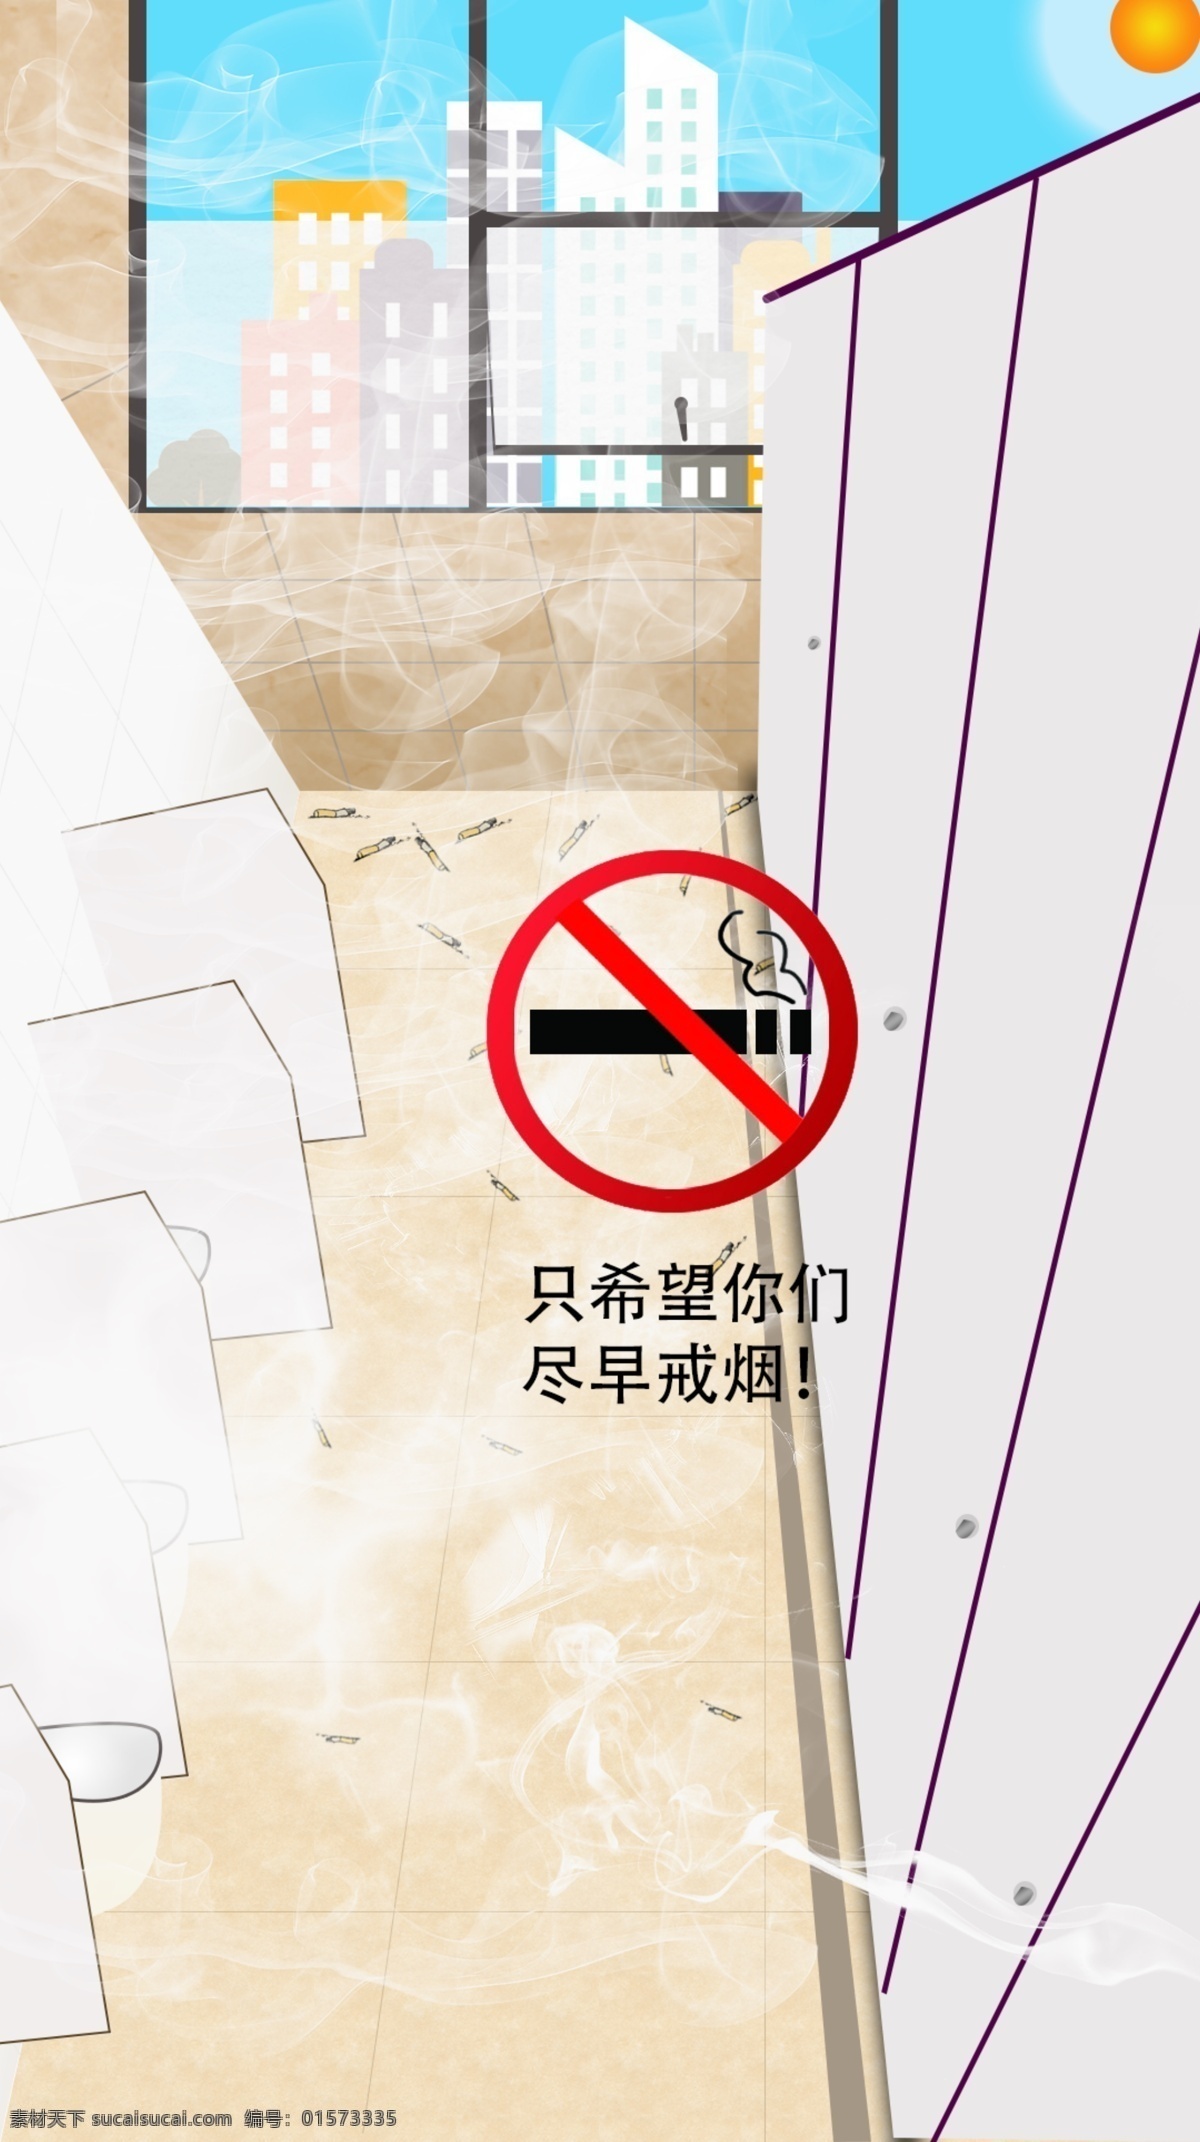 戒烟提醒 戒烟提示 戒烟 厕所广告 戒烟宣传 厕所卫生宣传 环保 白色